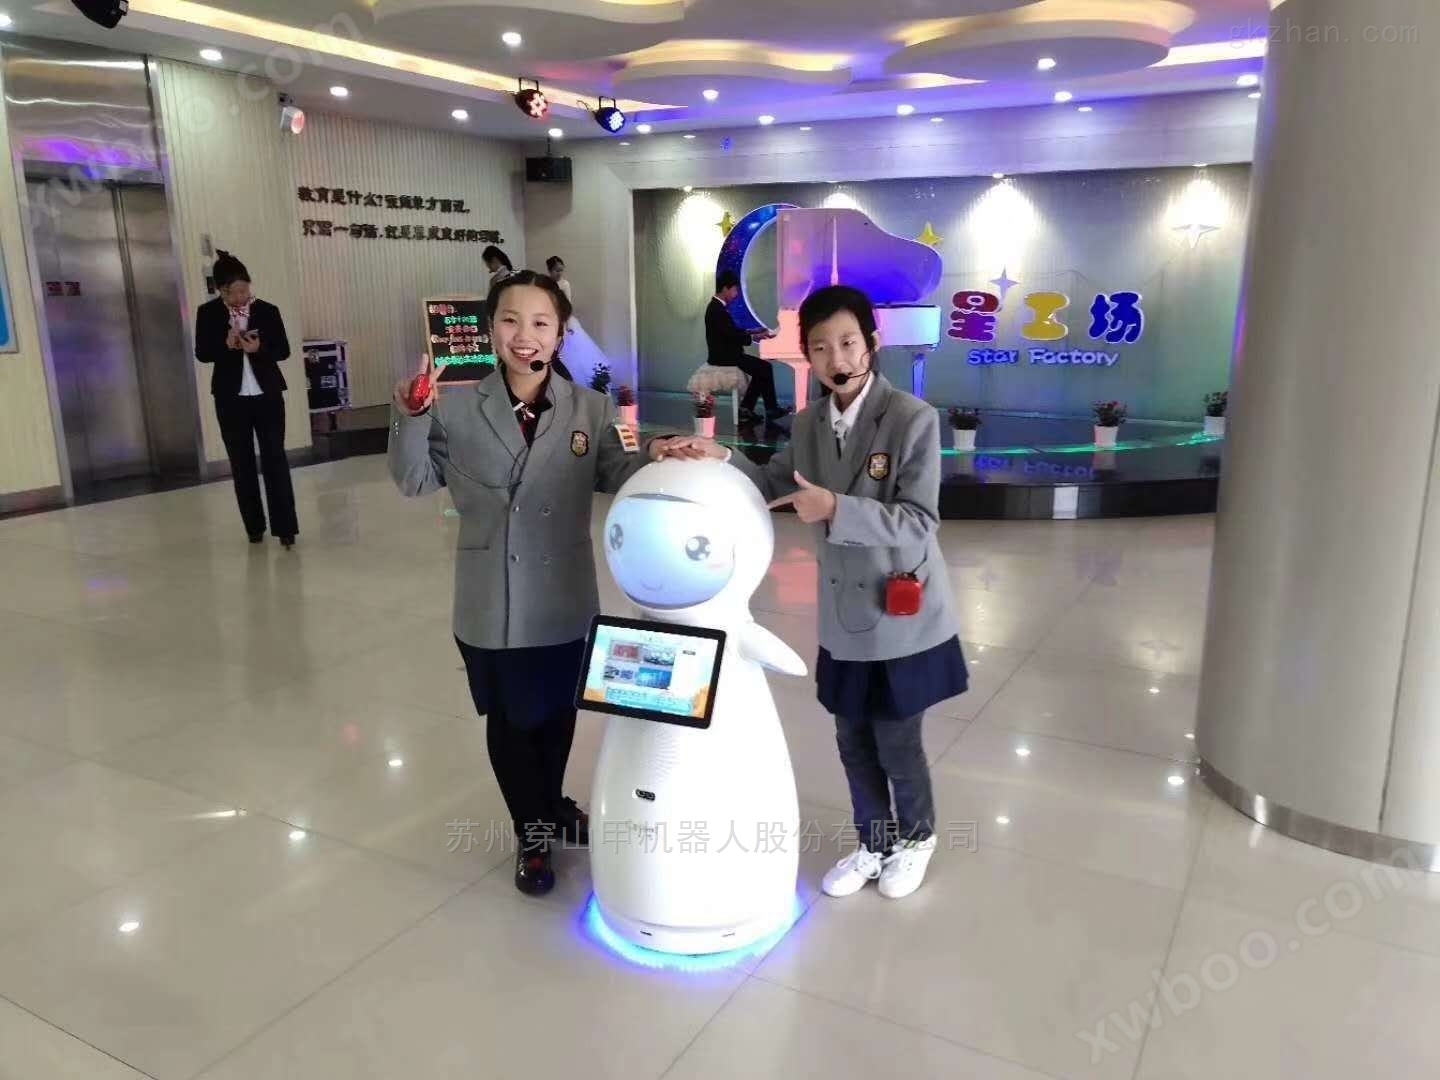 沈阳中学大厅迎宾介绍接待教育机器人